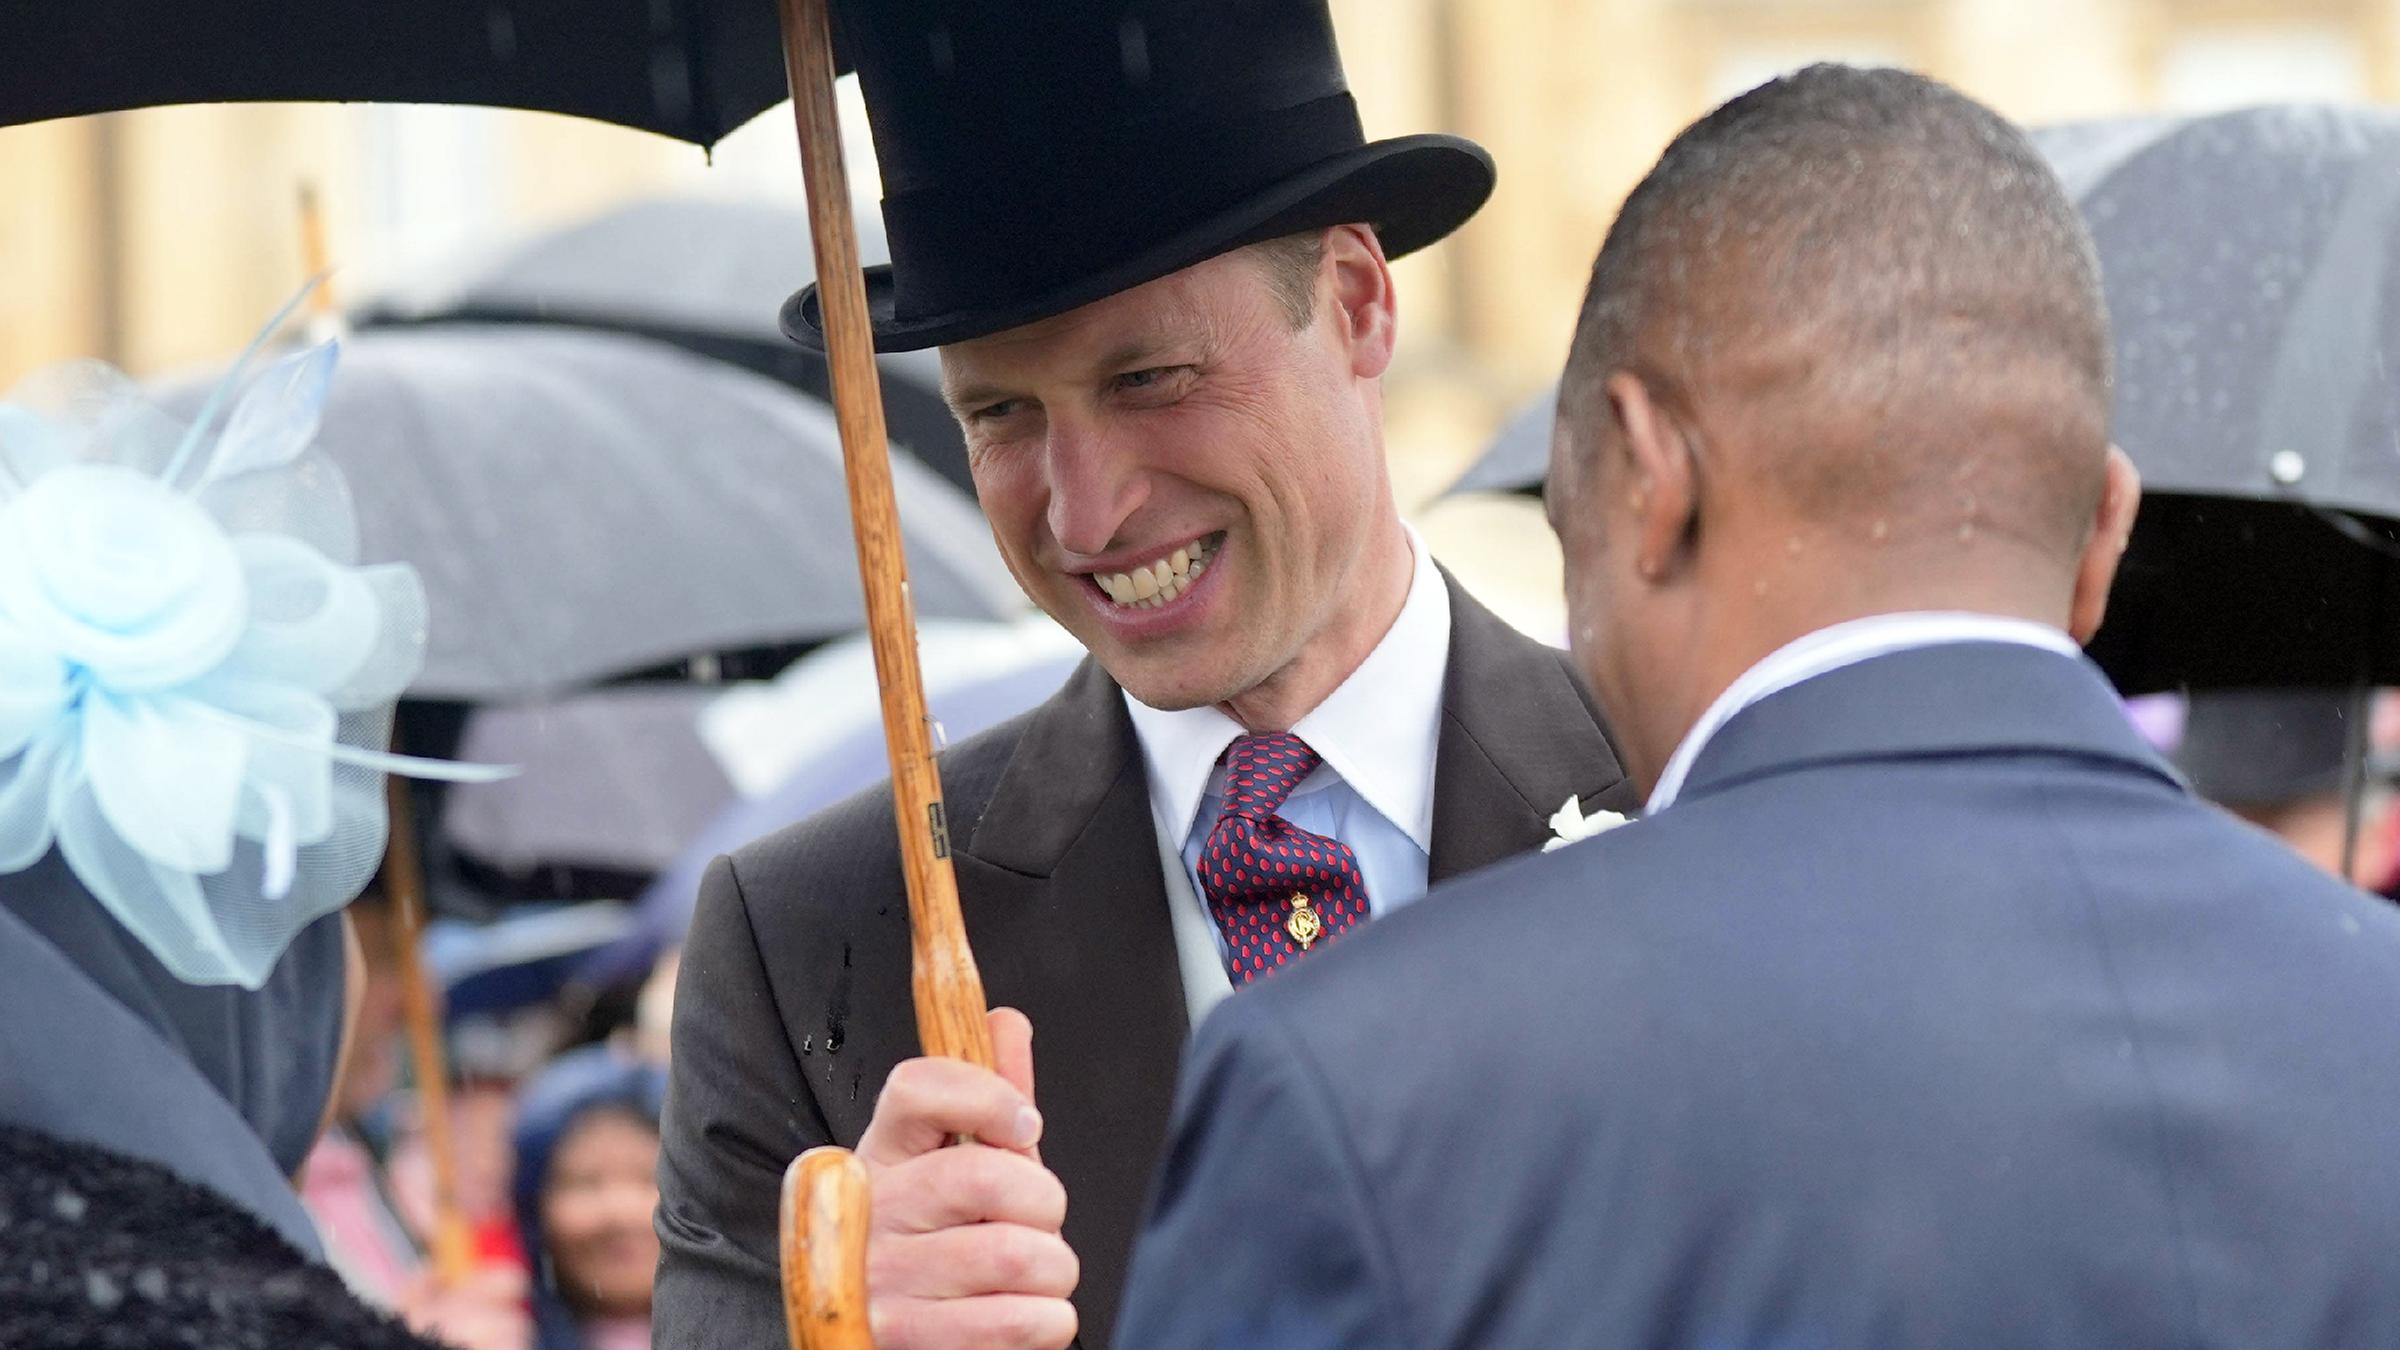 Prinz William mit Schirm und Zylinder 